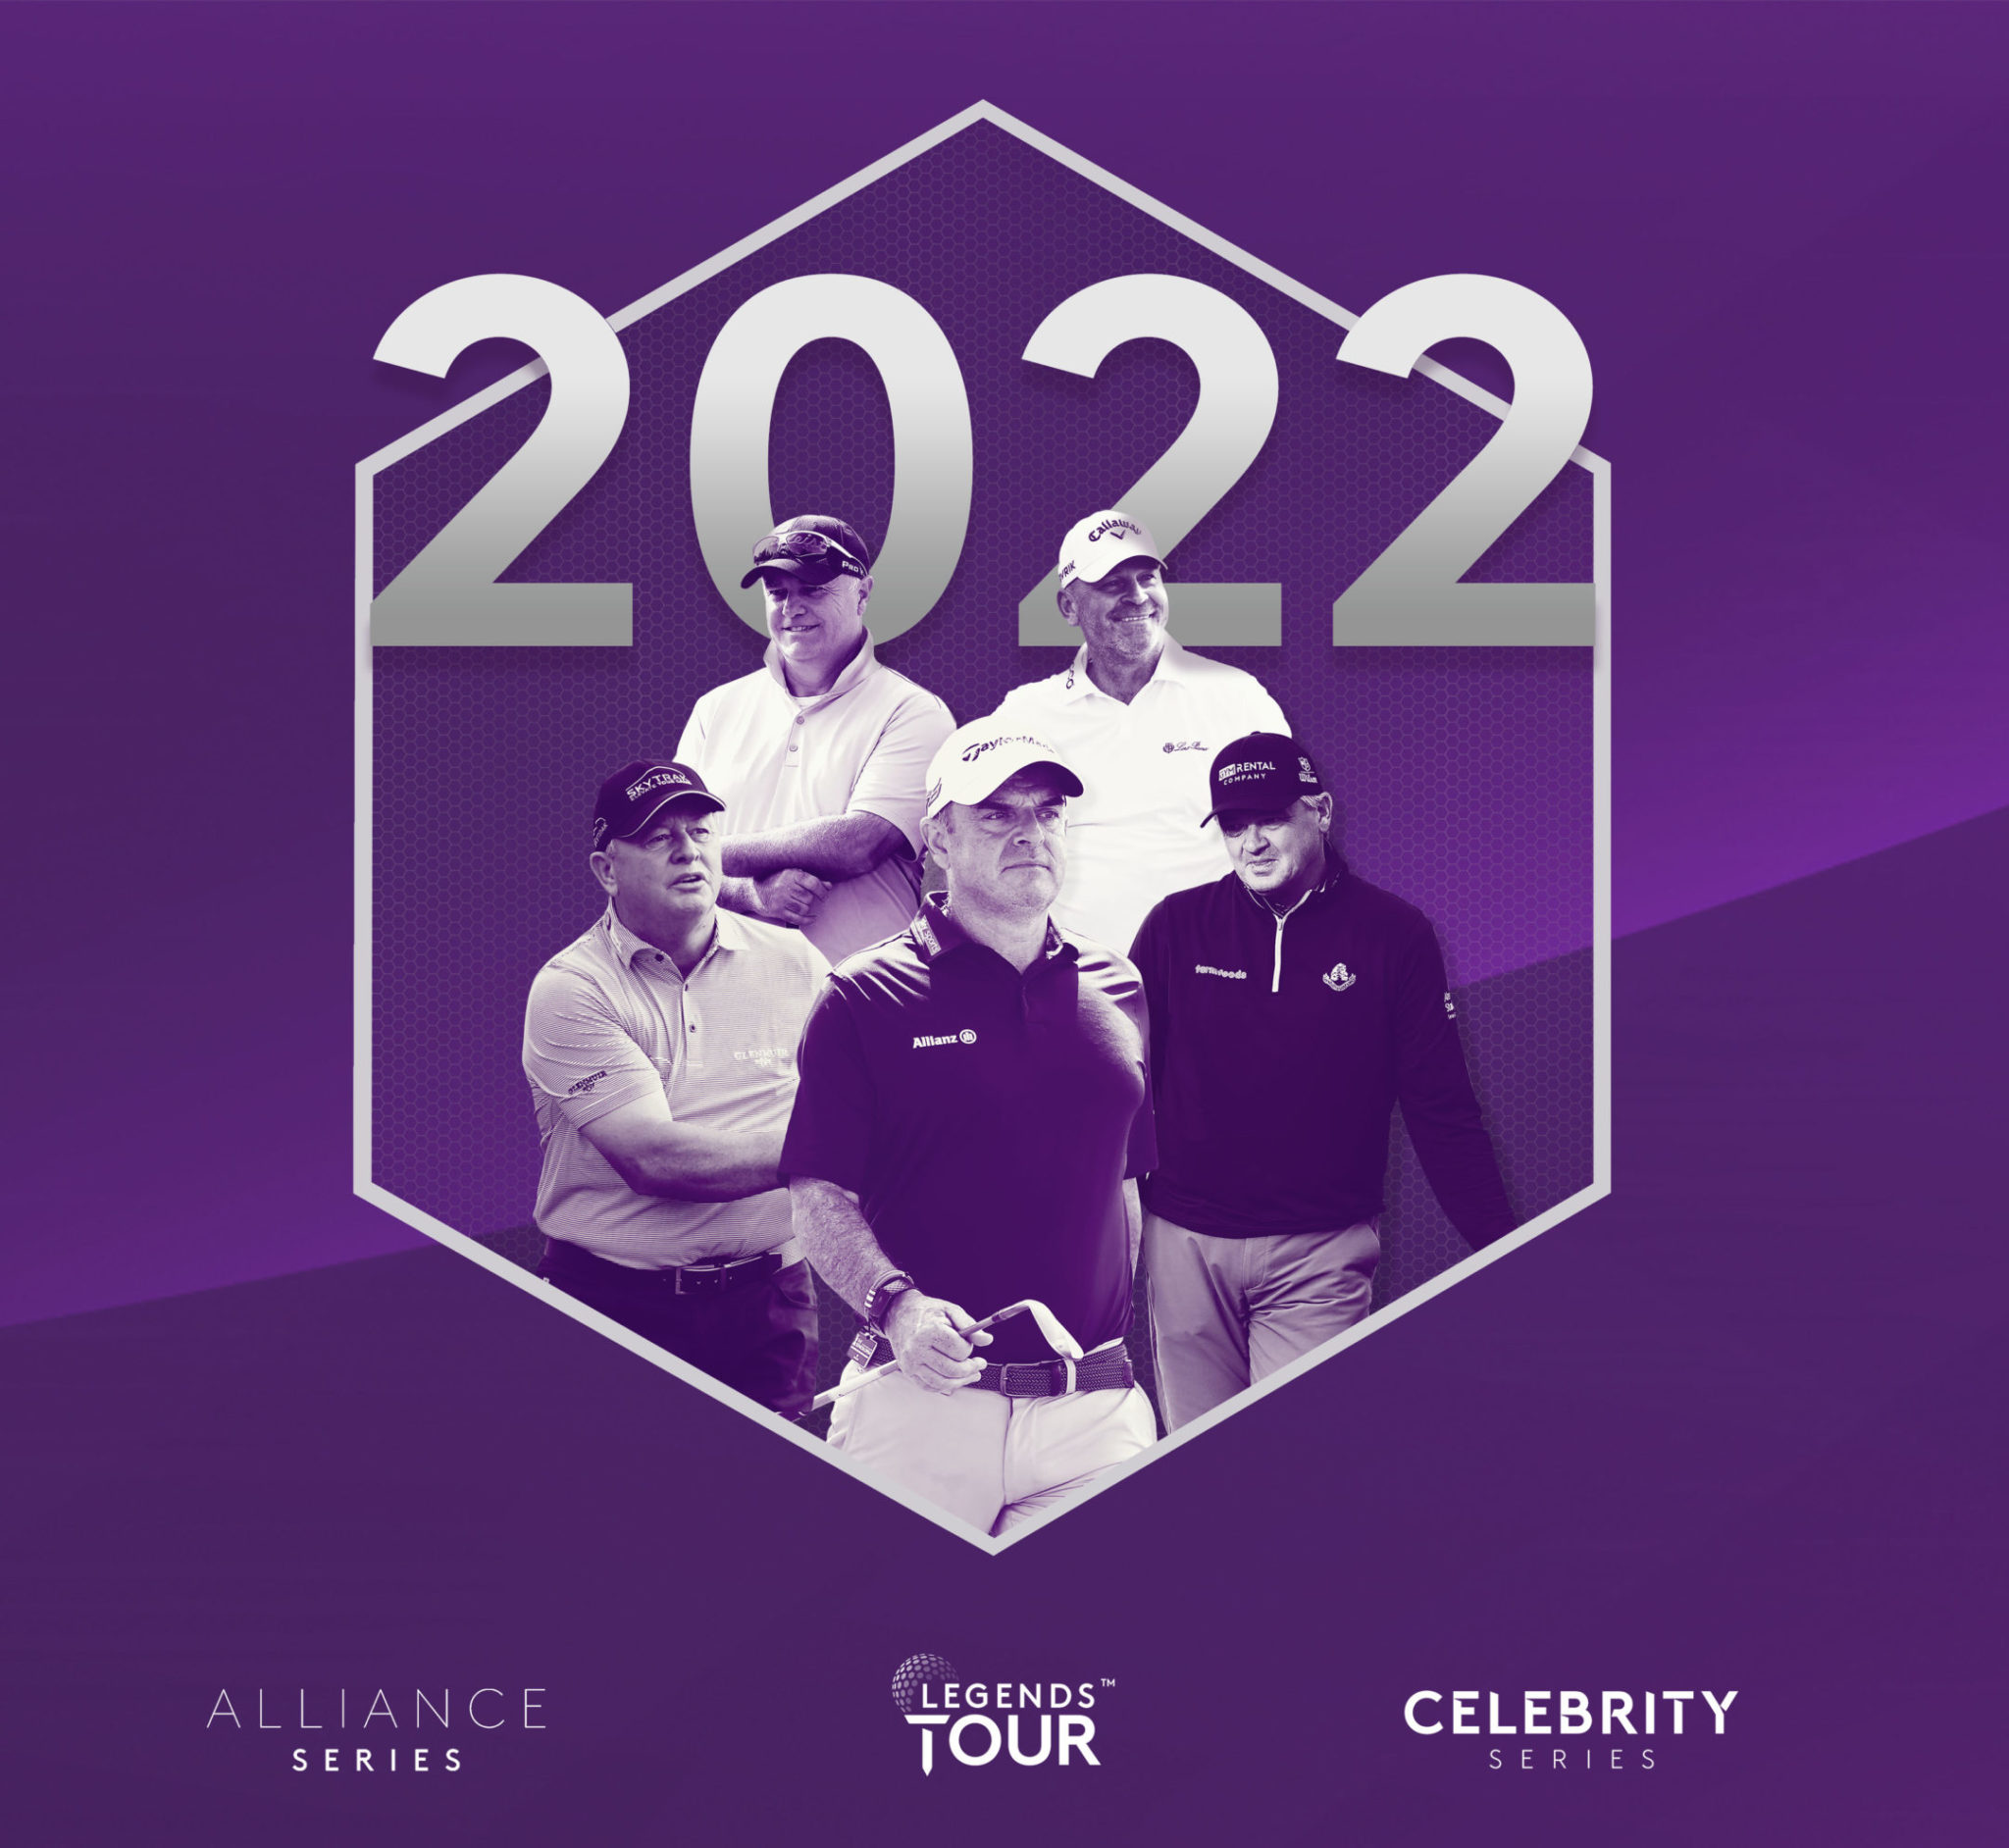 legends tour prize money 2022